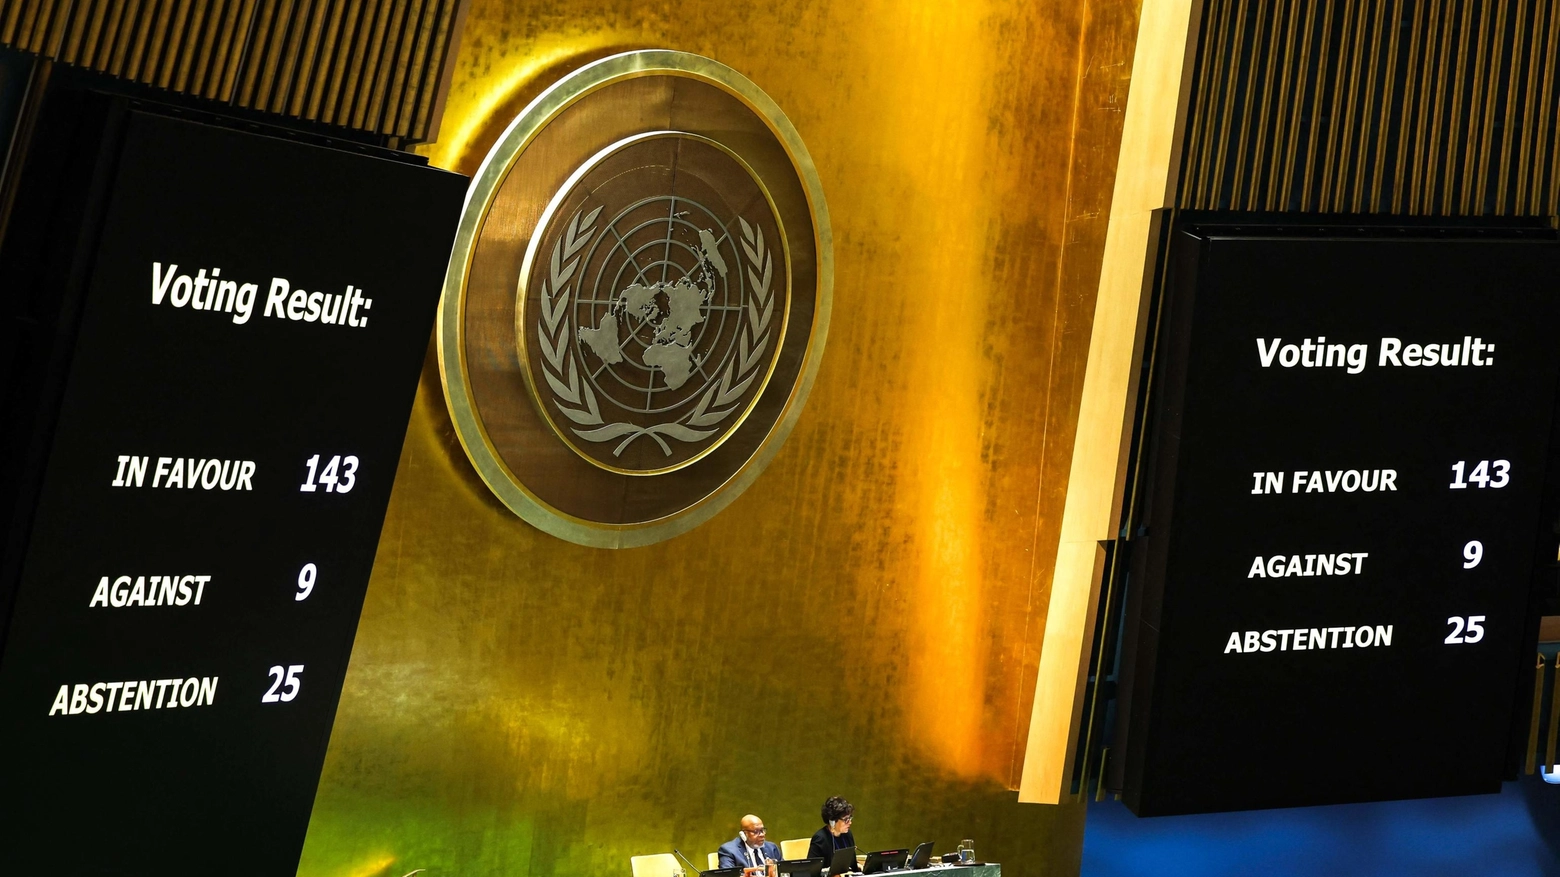 L'Assemblea generale delle Nazioni Unite esorta il Consiglio di Sicurezza a "riconsiderare favorevolmente" la piena adesione del Paese all'organizzazione. Cosa succede ora?